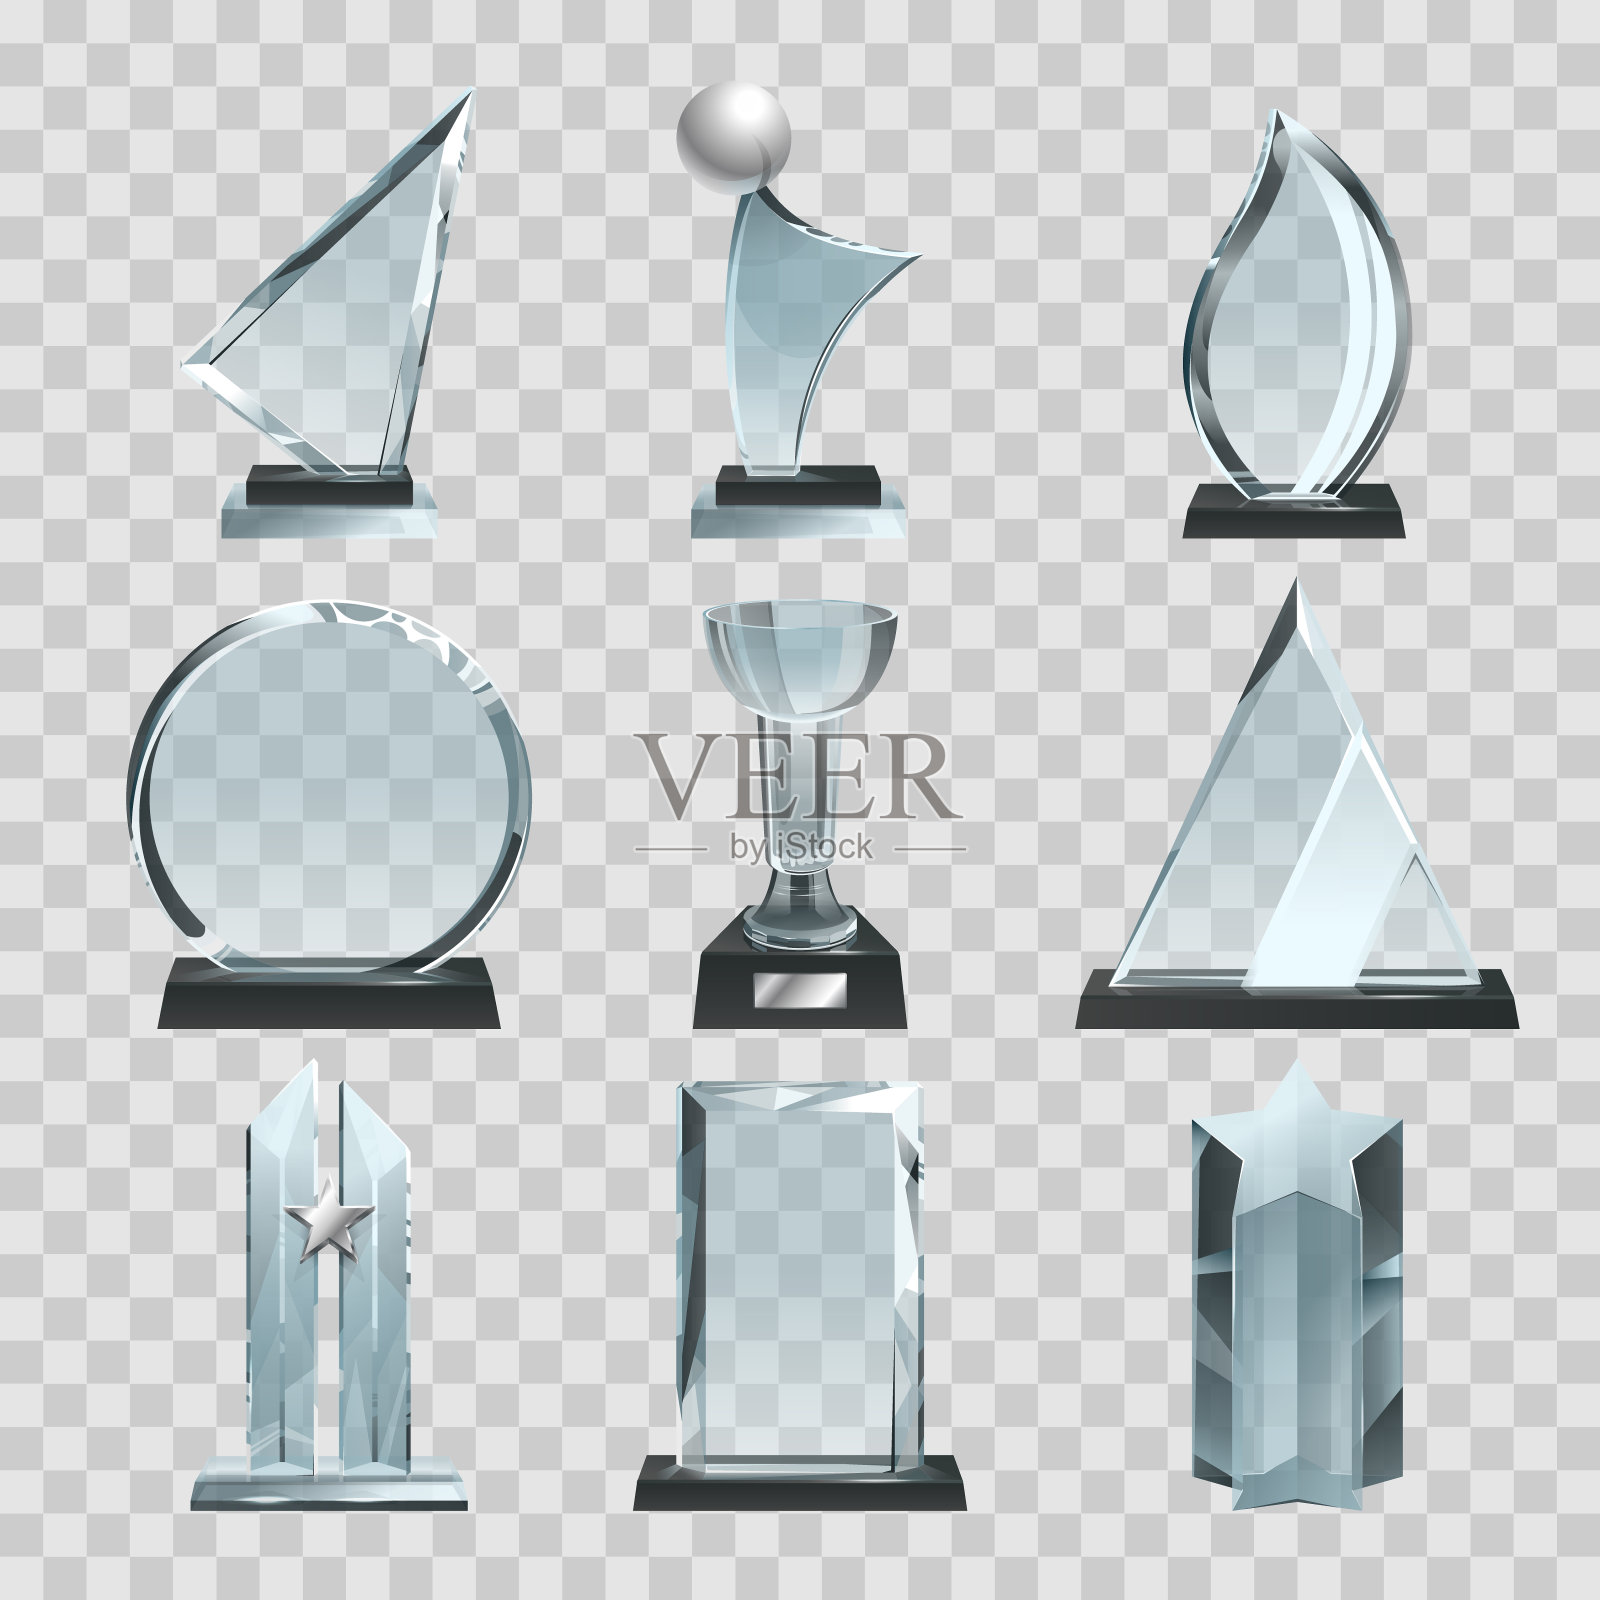 光滑透明的奖杯、奖品和优胜者奖杯。矢量插图图标素材